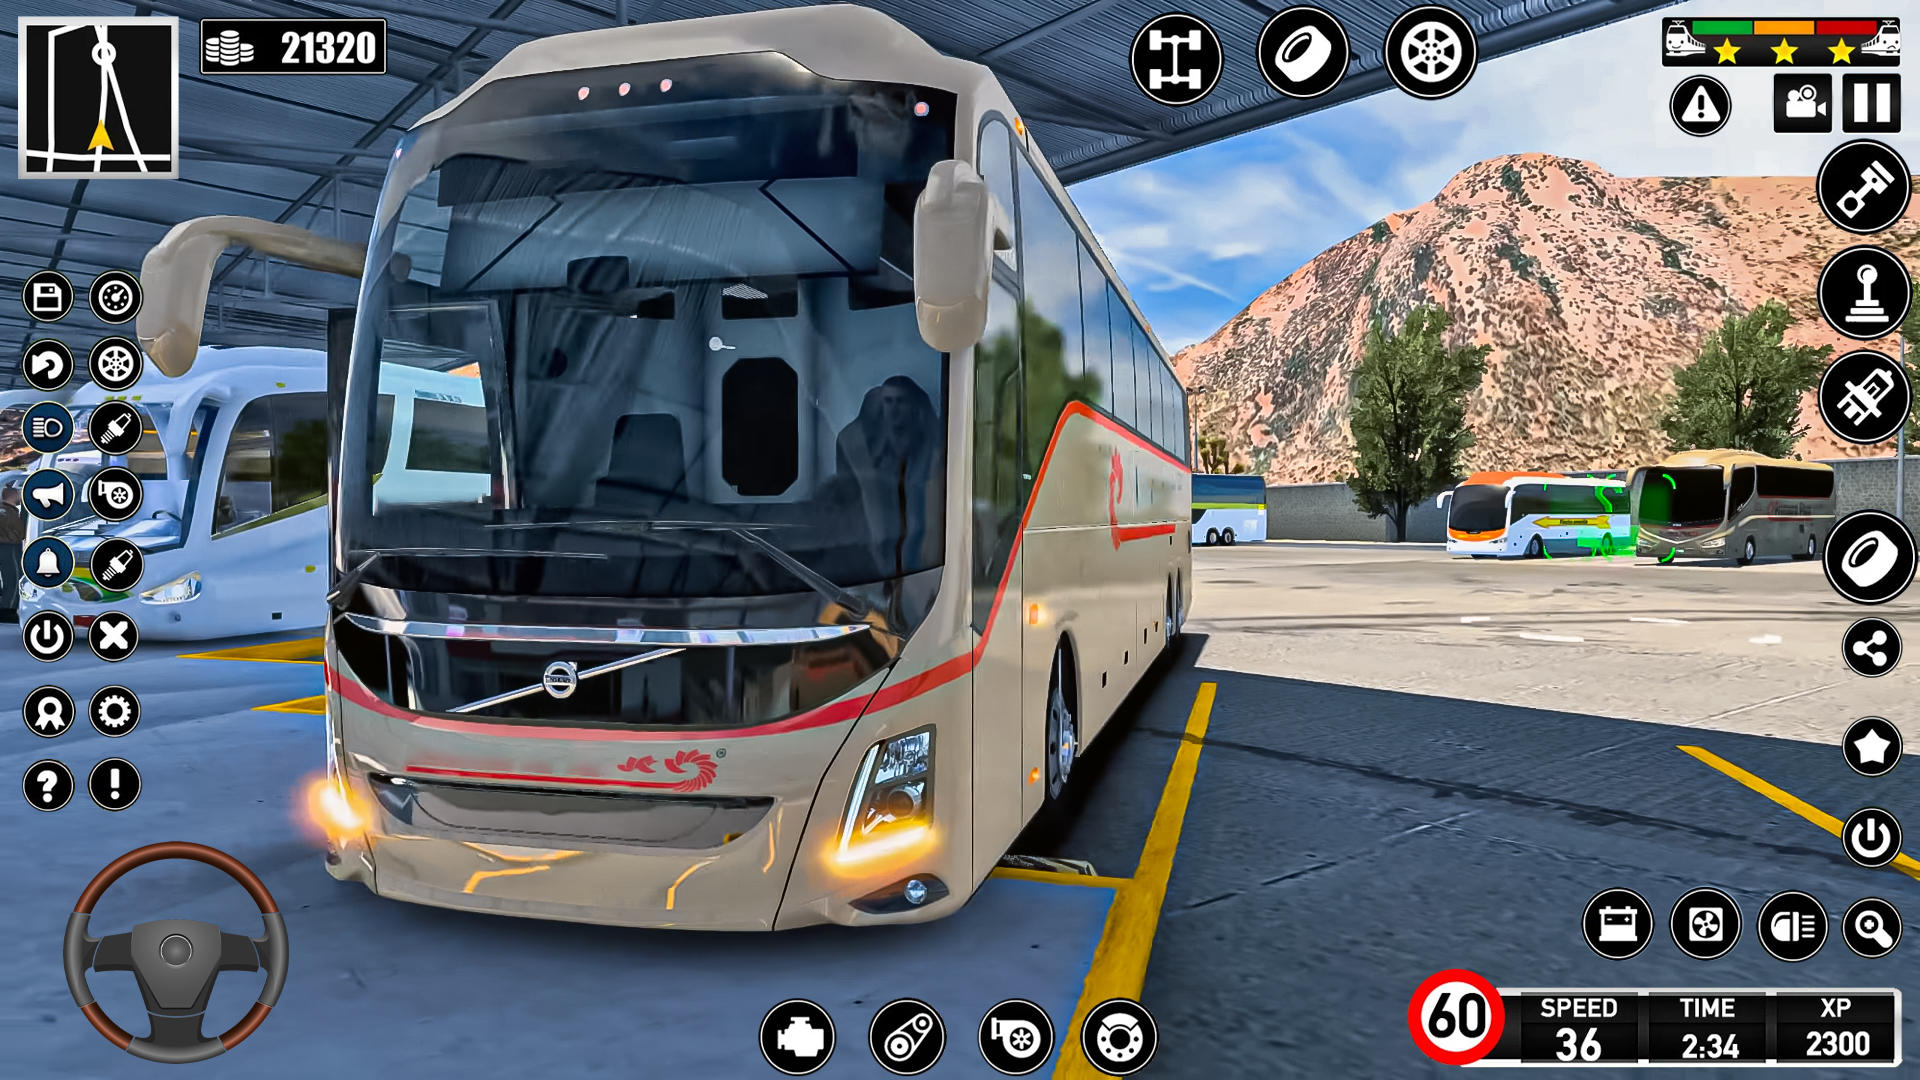 Screenshot 1 of 美國教練司機巴士模擬器 1.0.1.0